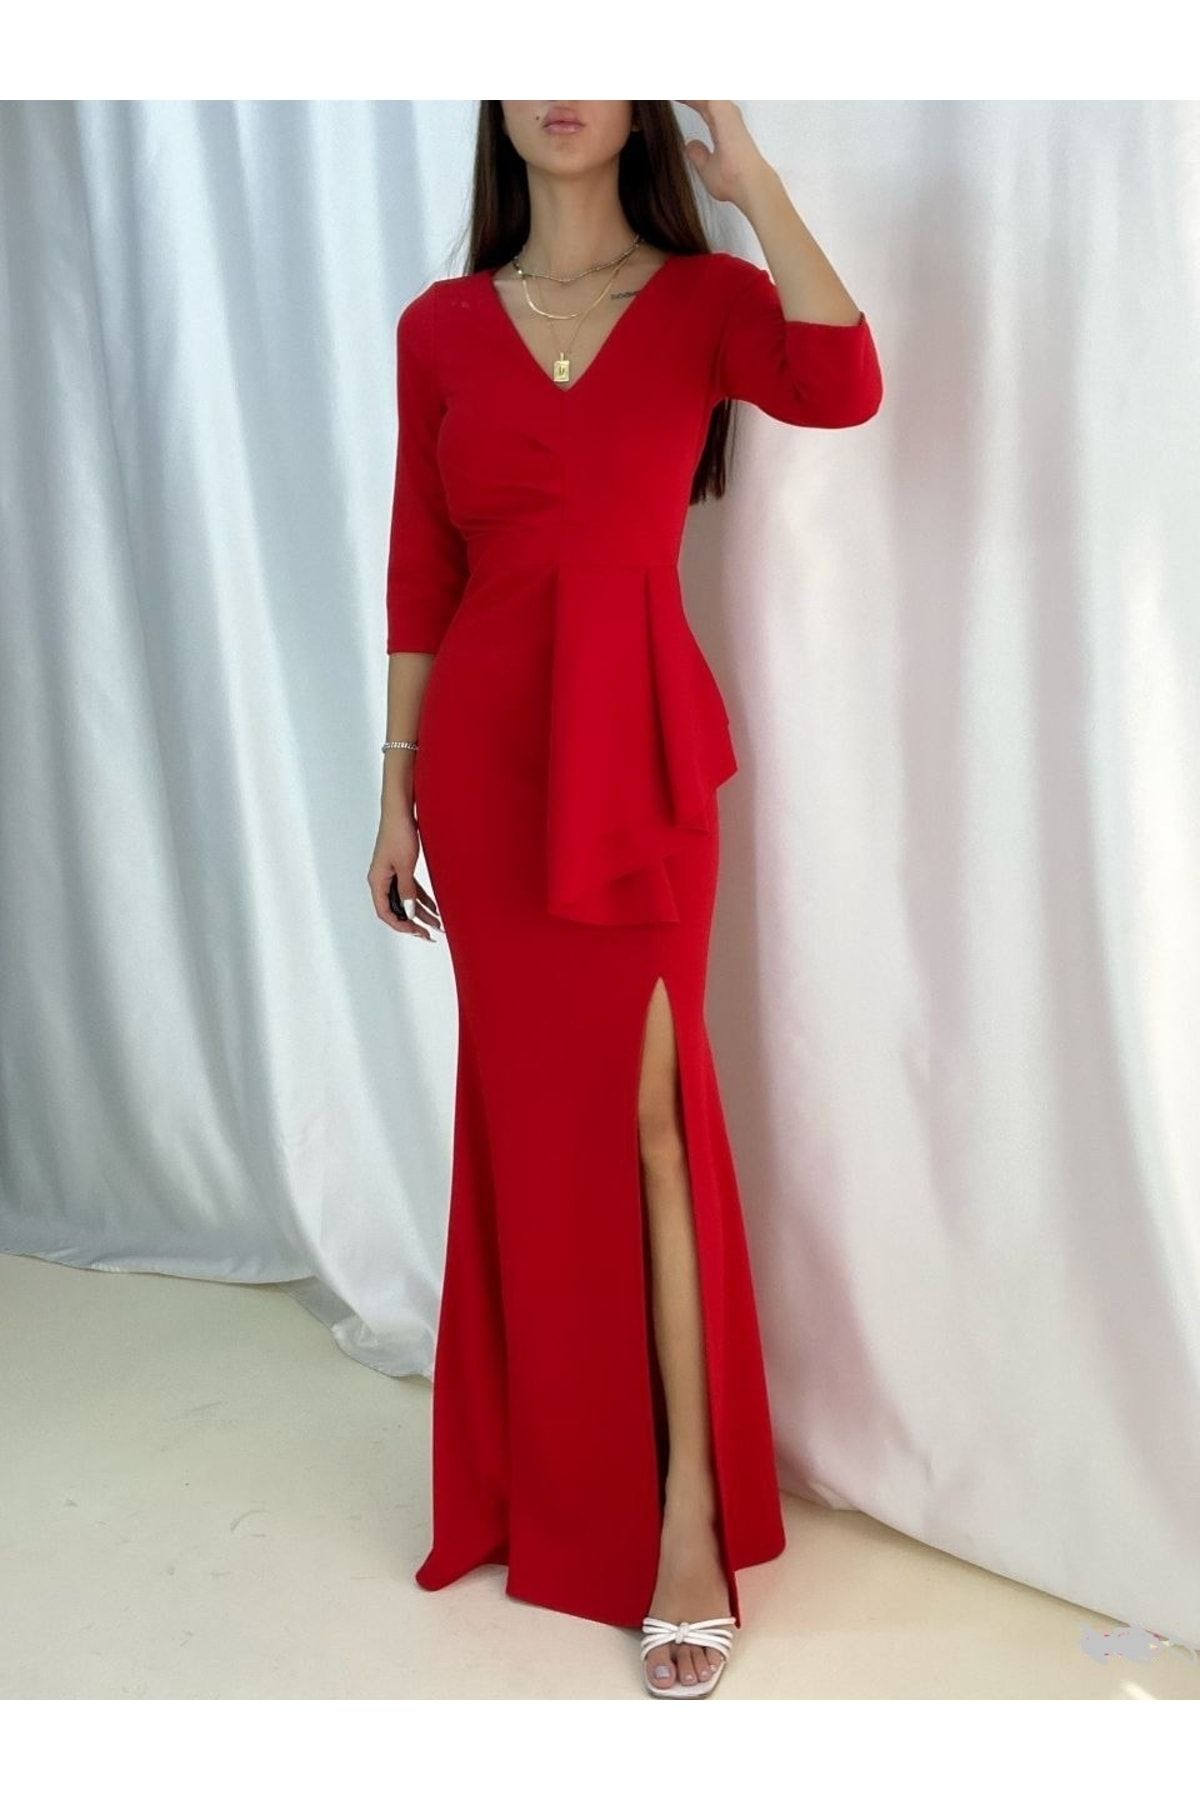 Secret Passion Lingerie Esnek Krep Kumaş V Yaka Belinde Volan Detay Kırmızı Uzun Abiye Elbise Yırtmaçlı Elbise 58570 634